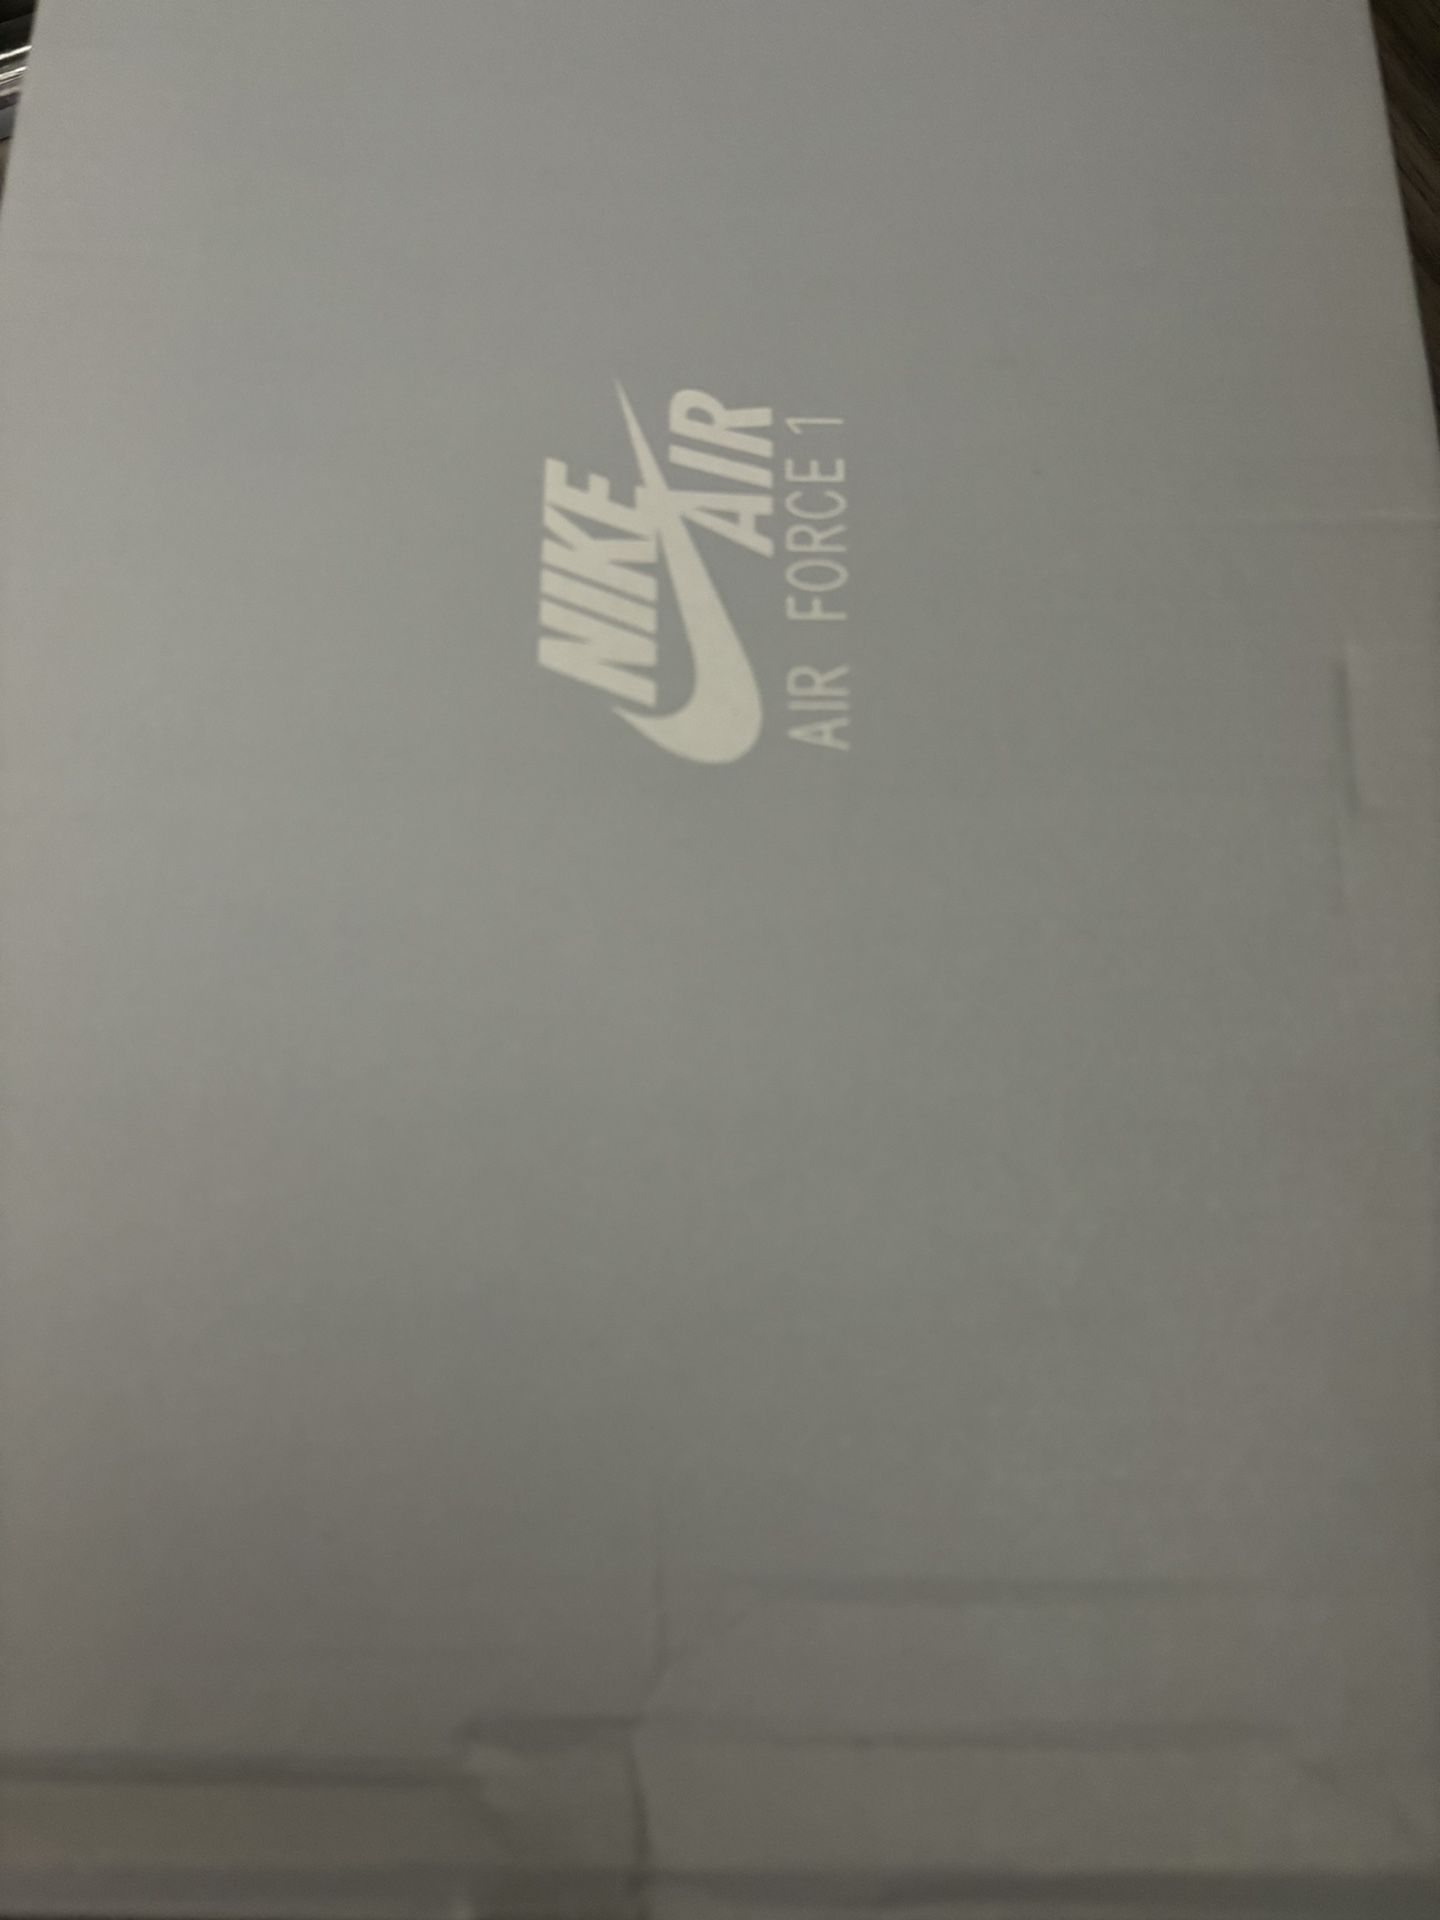 Nike Air 